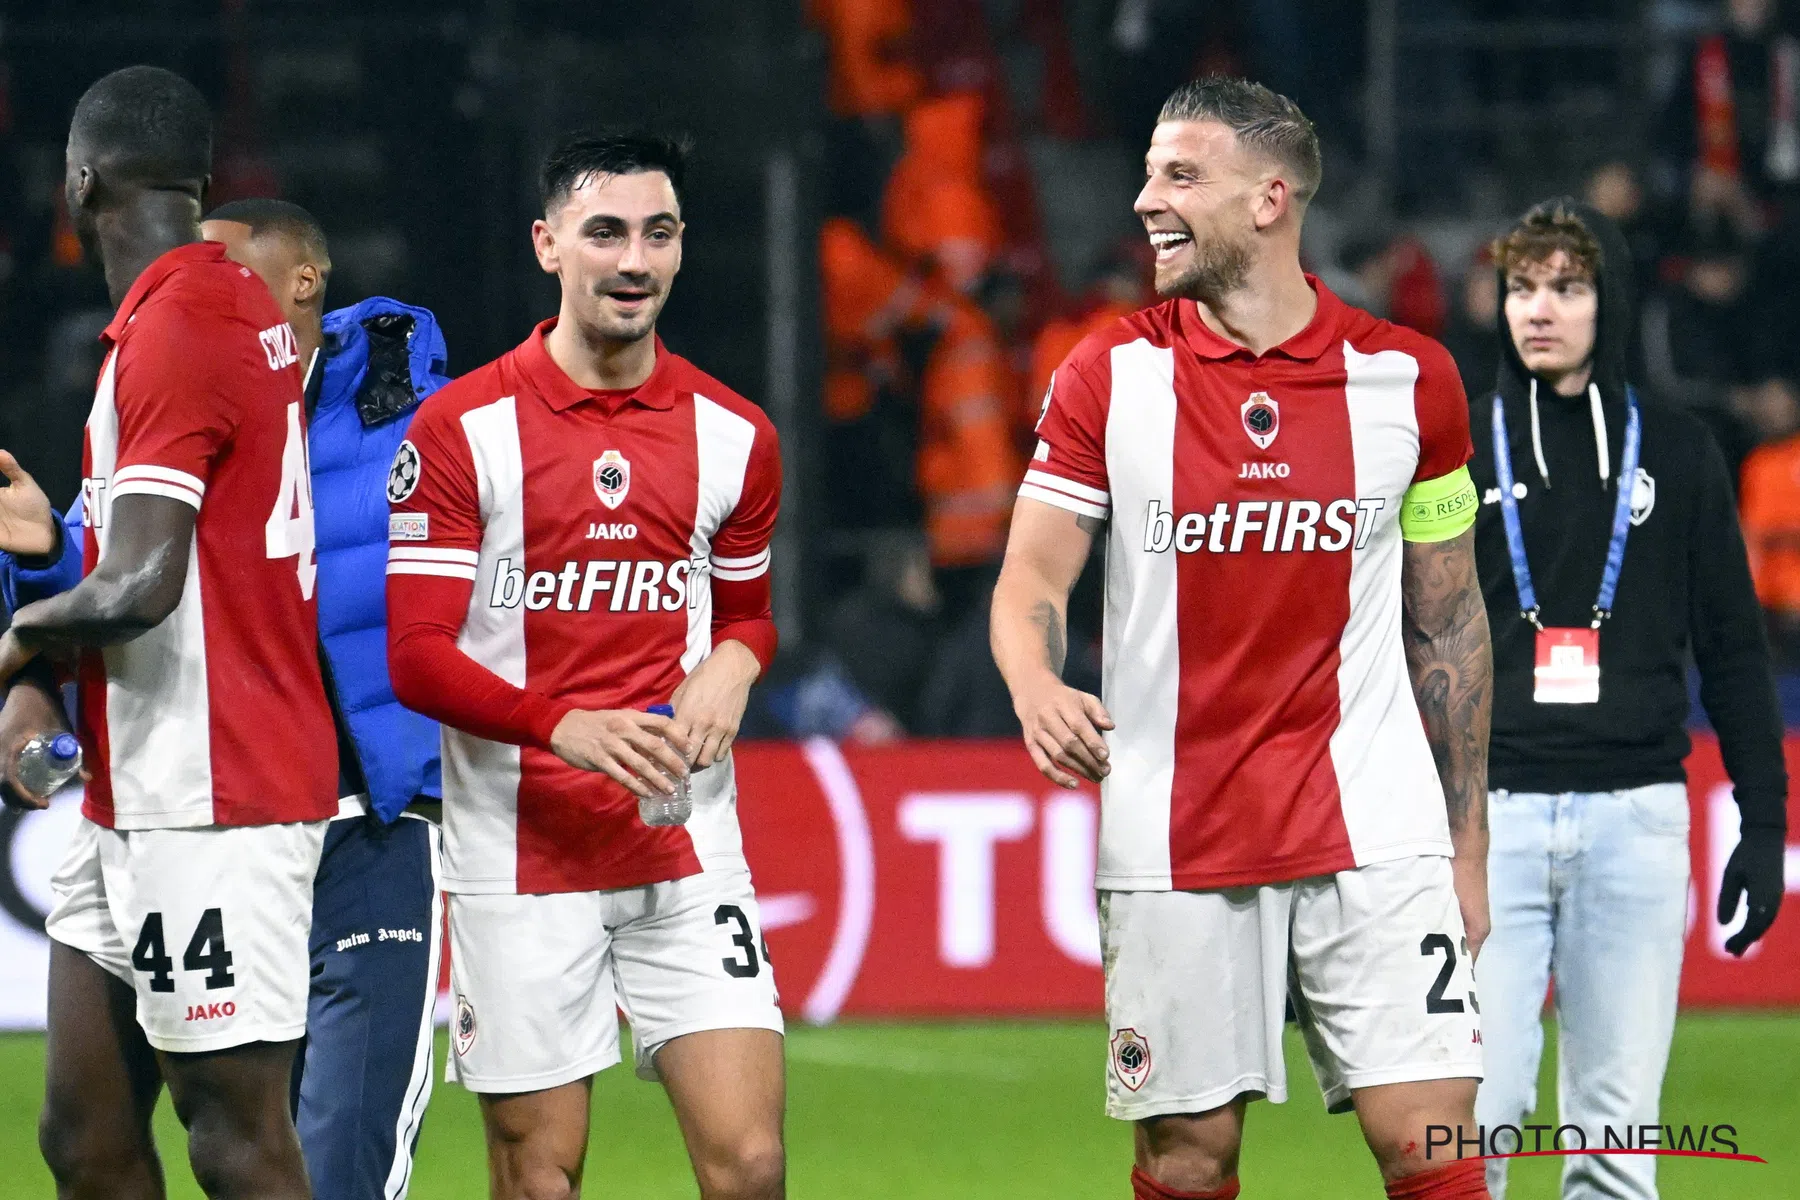 Sporteconoom ziet dat Antwerp het minste geld overhoudt aan Champions League